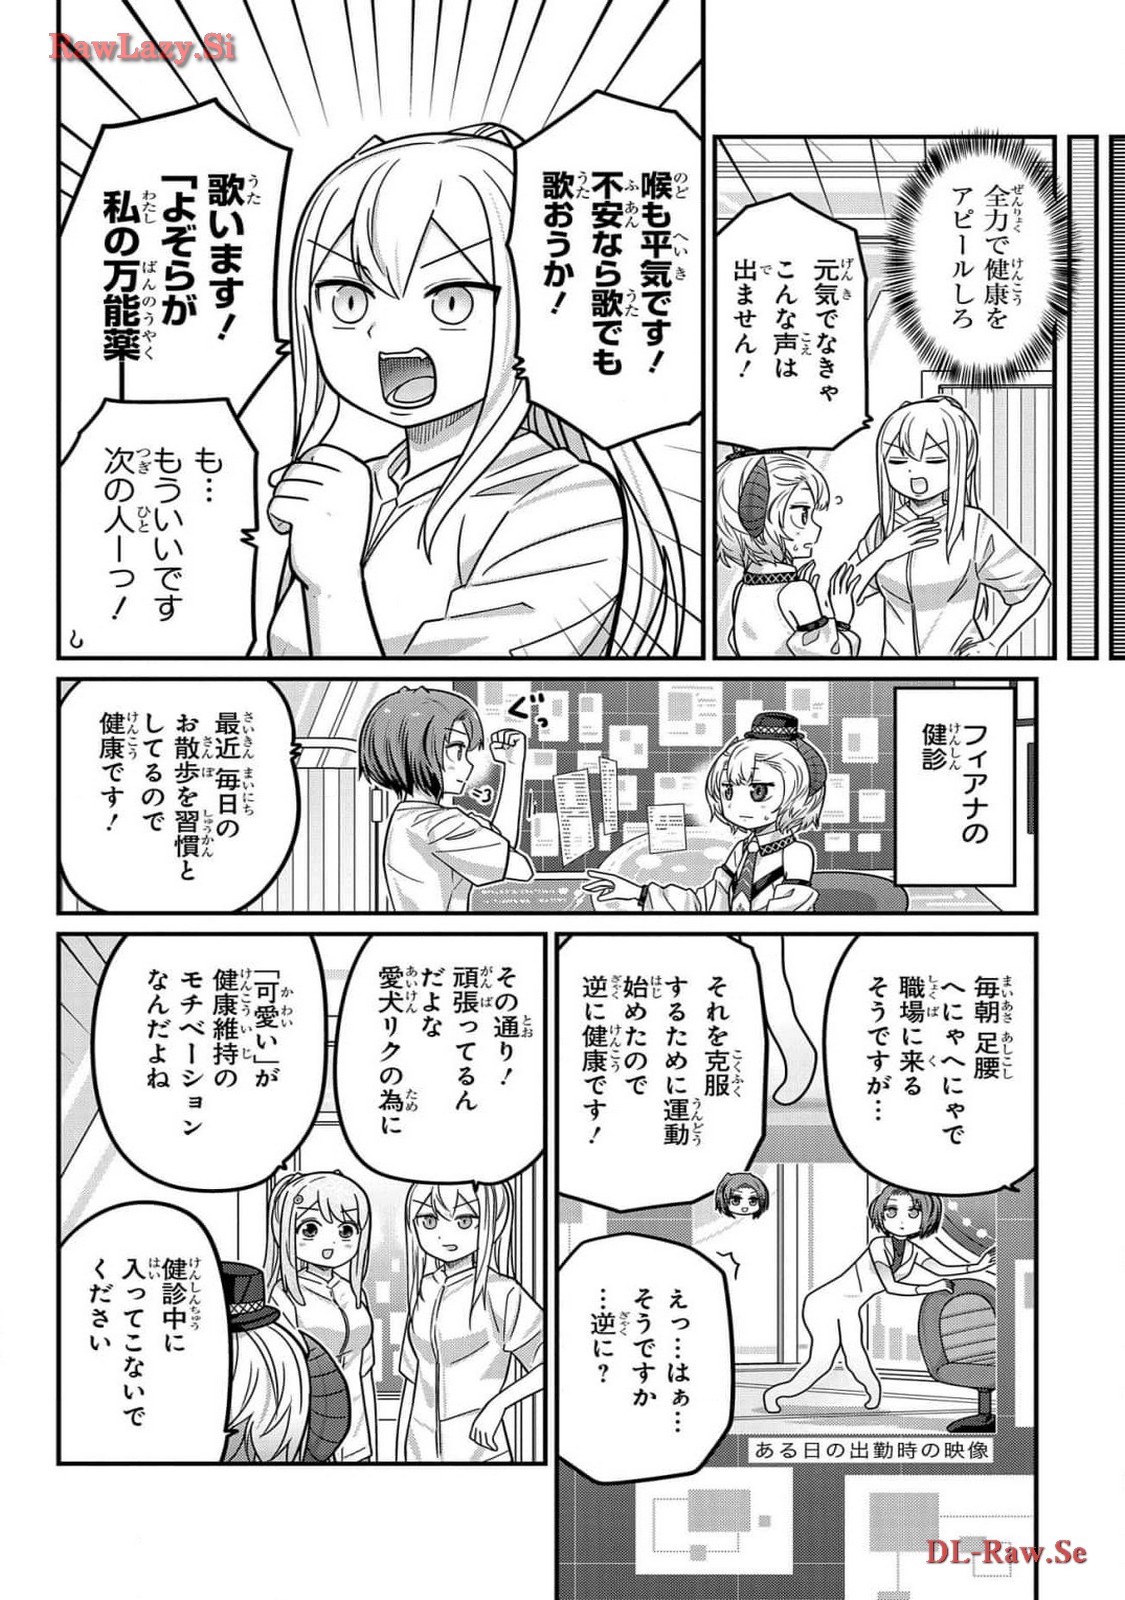 Kawaisugi Crisis - Chapter 107 - Page 4